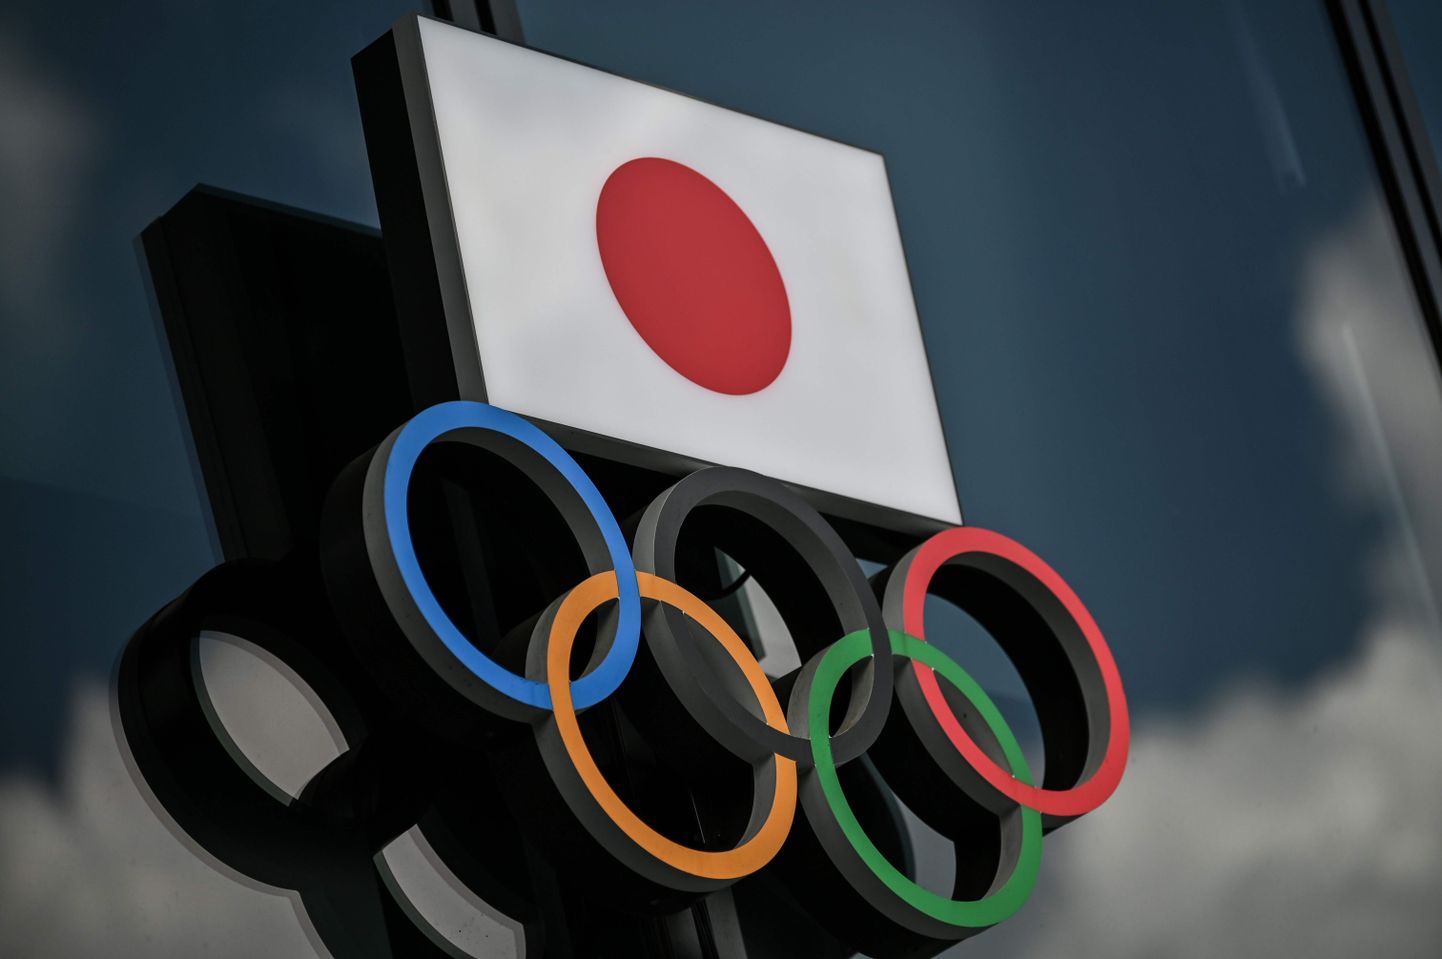 Olümpiarõngad Tokyo olümpiamuuseumi fassaadil.